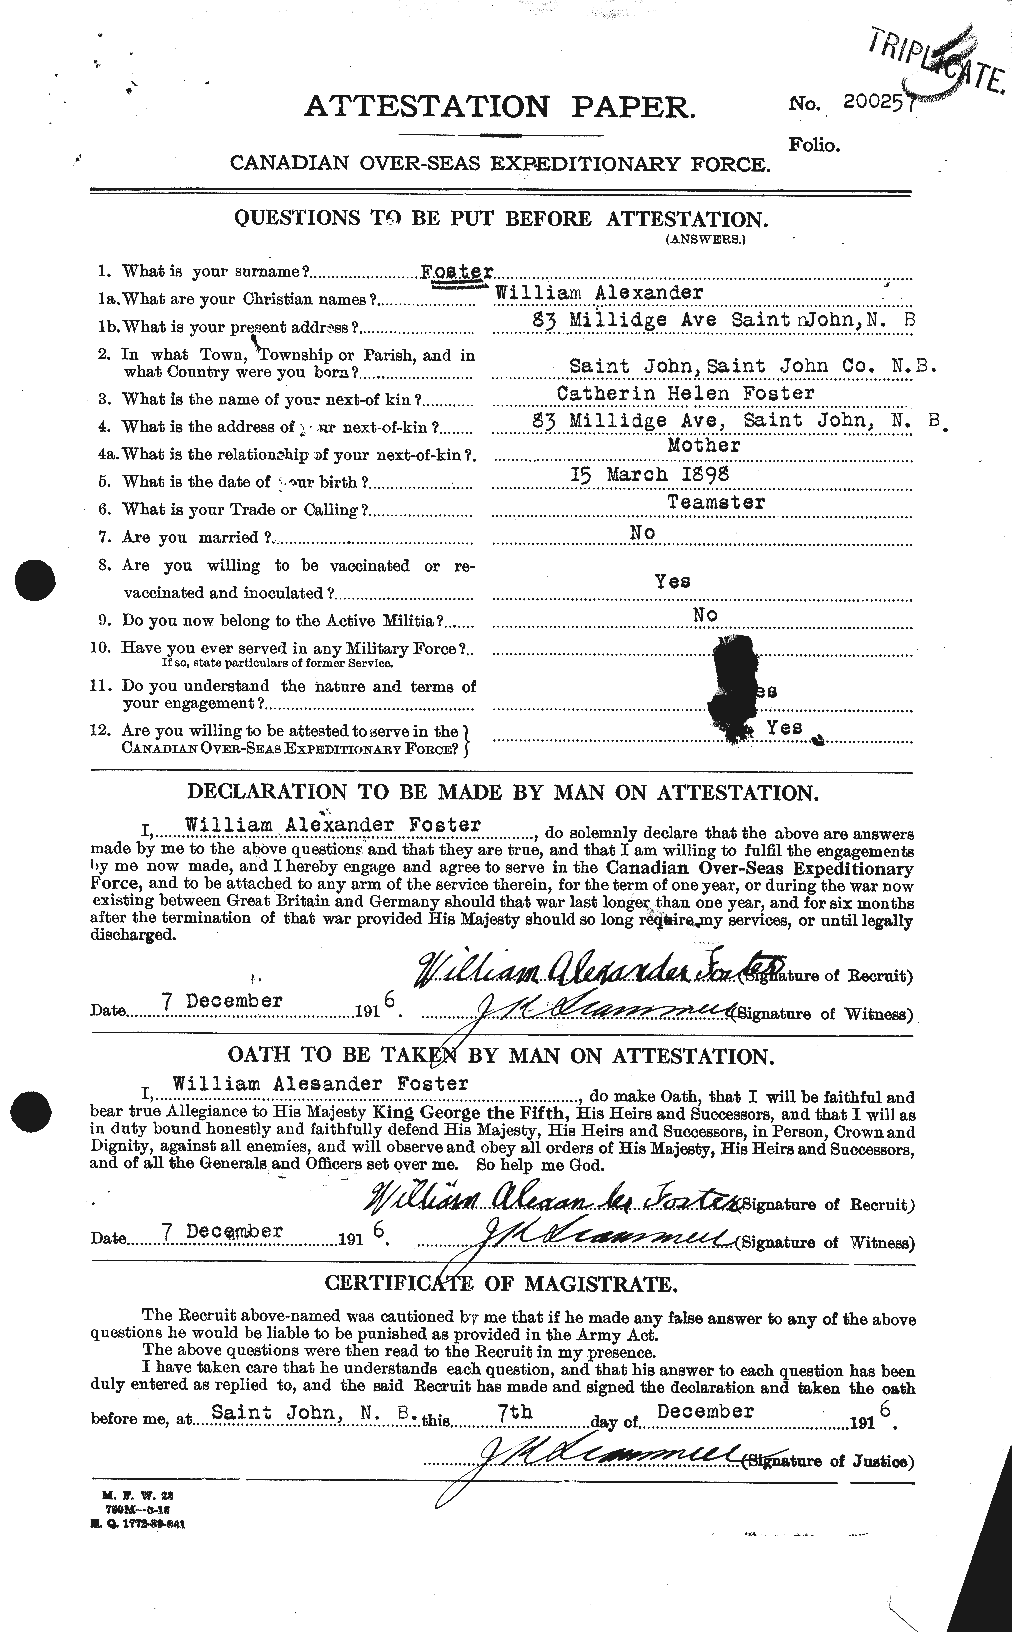 Dossiers du Personnel de la Première Guerre mondiale - CEC 328725a